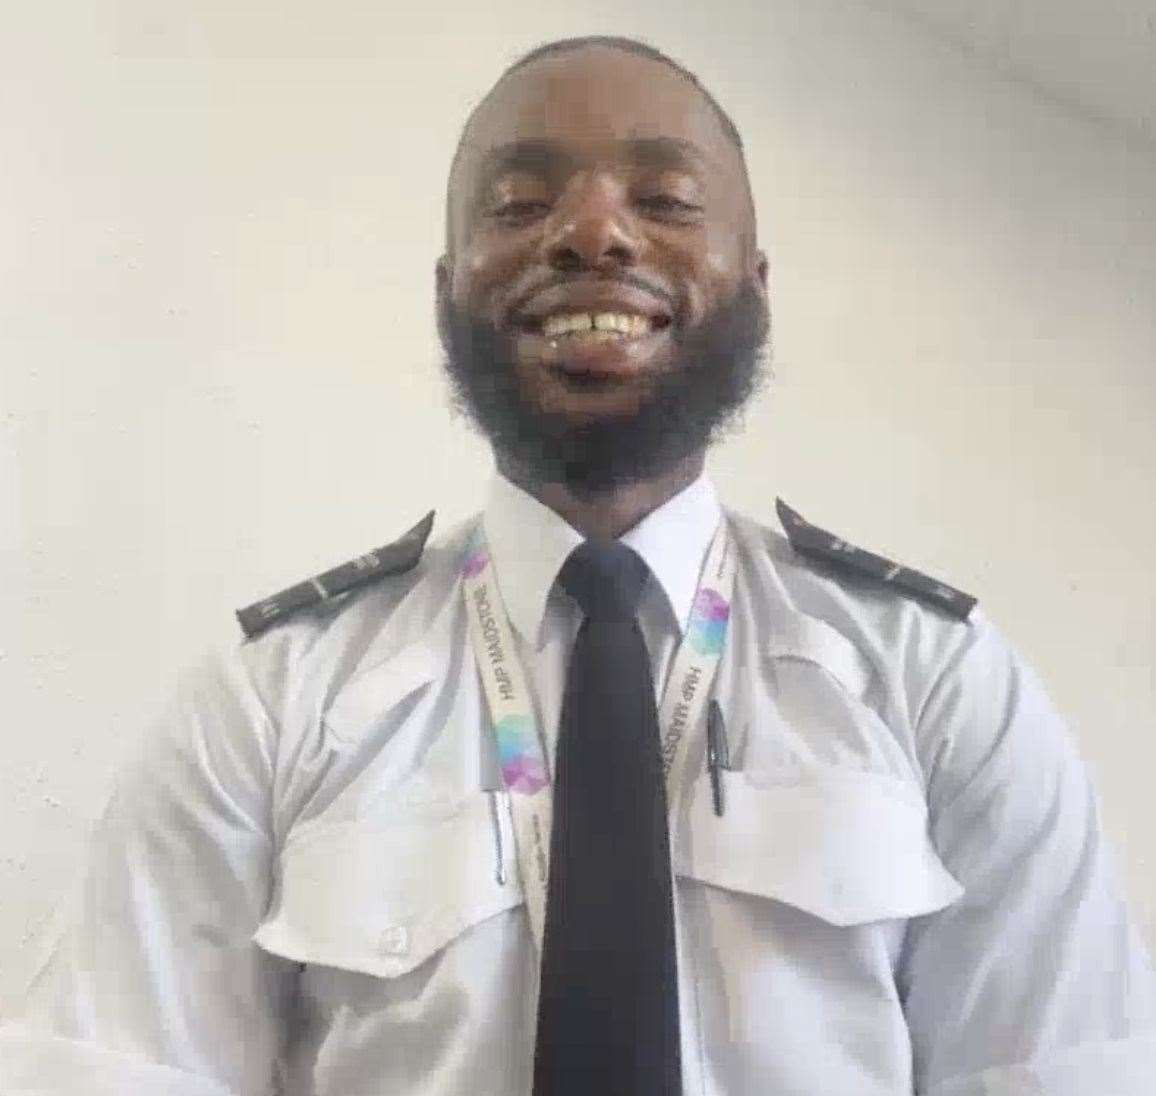 Maidstone Prison Officer, Chibuike Ekeiwu